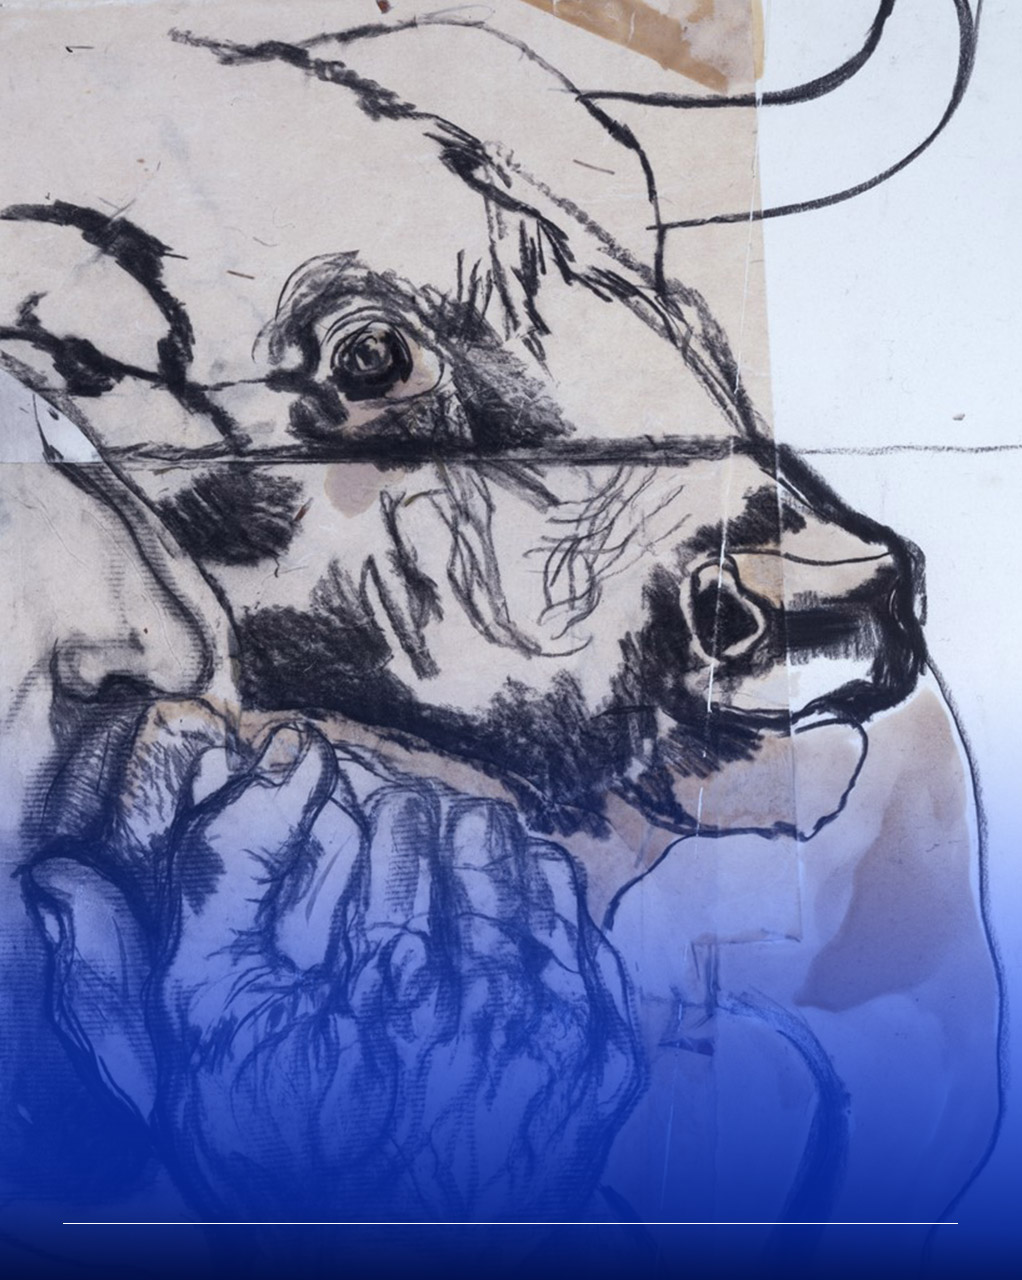 Immagine di una testa di toro sorretta da mani incrociate